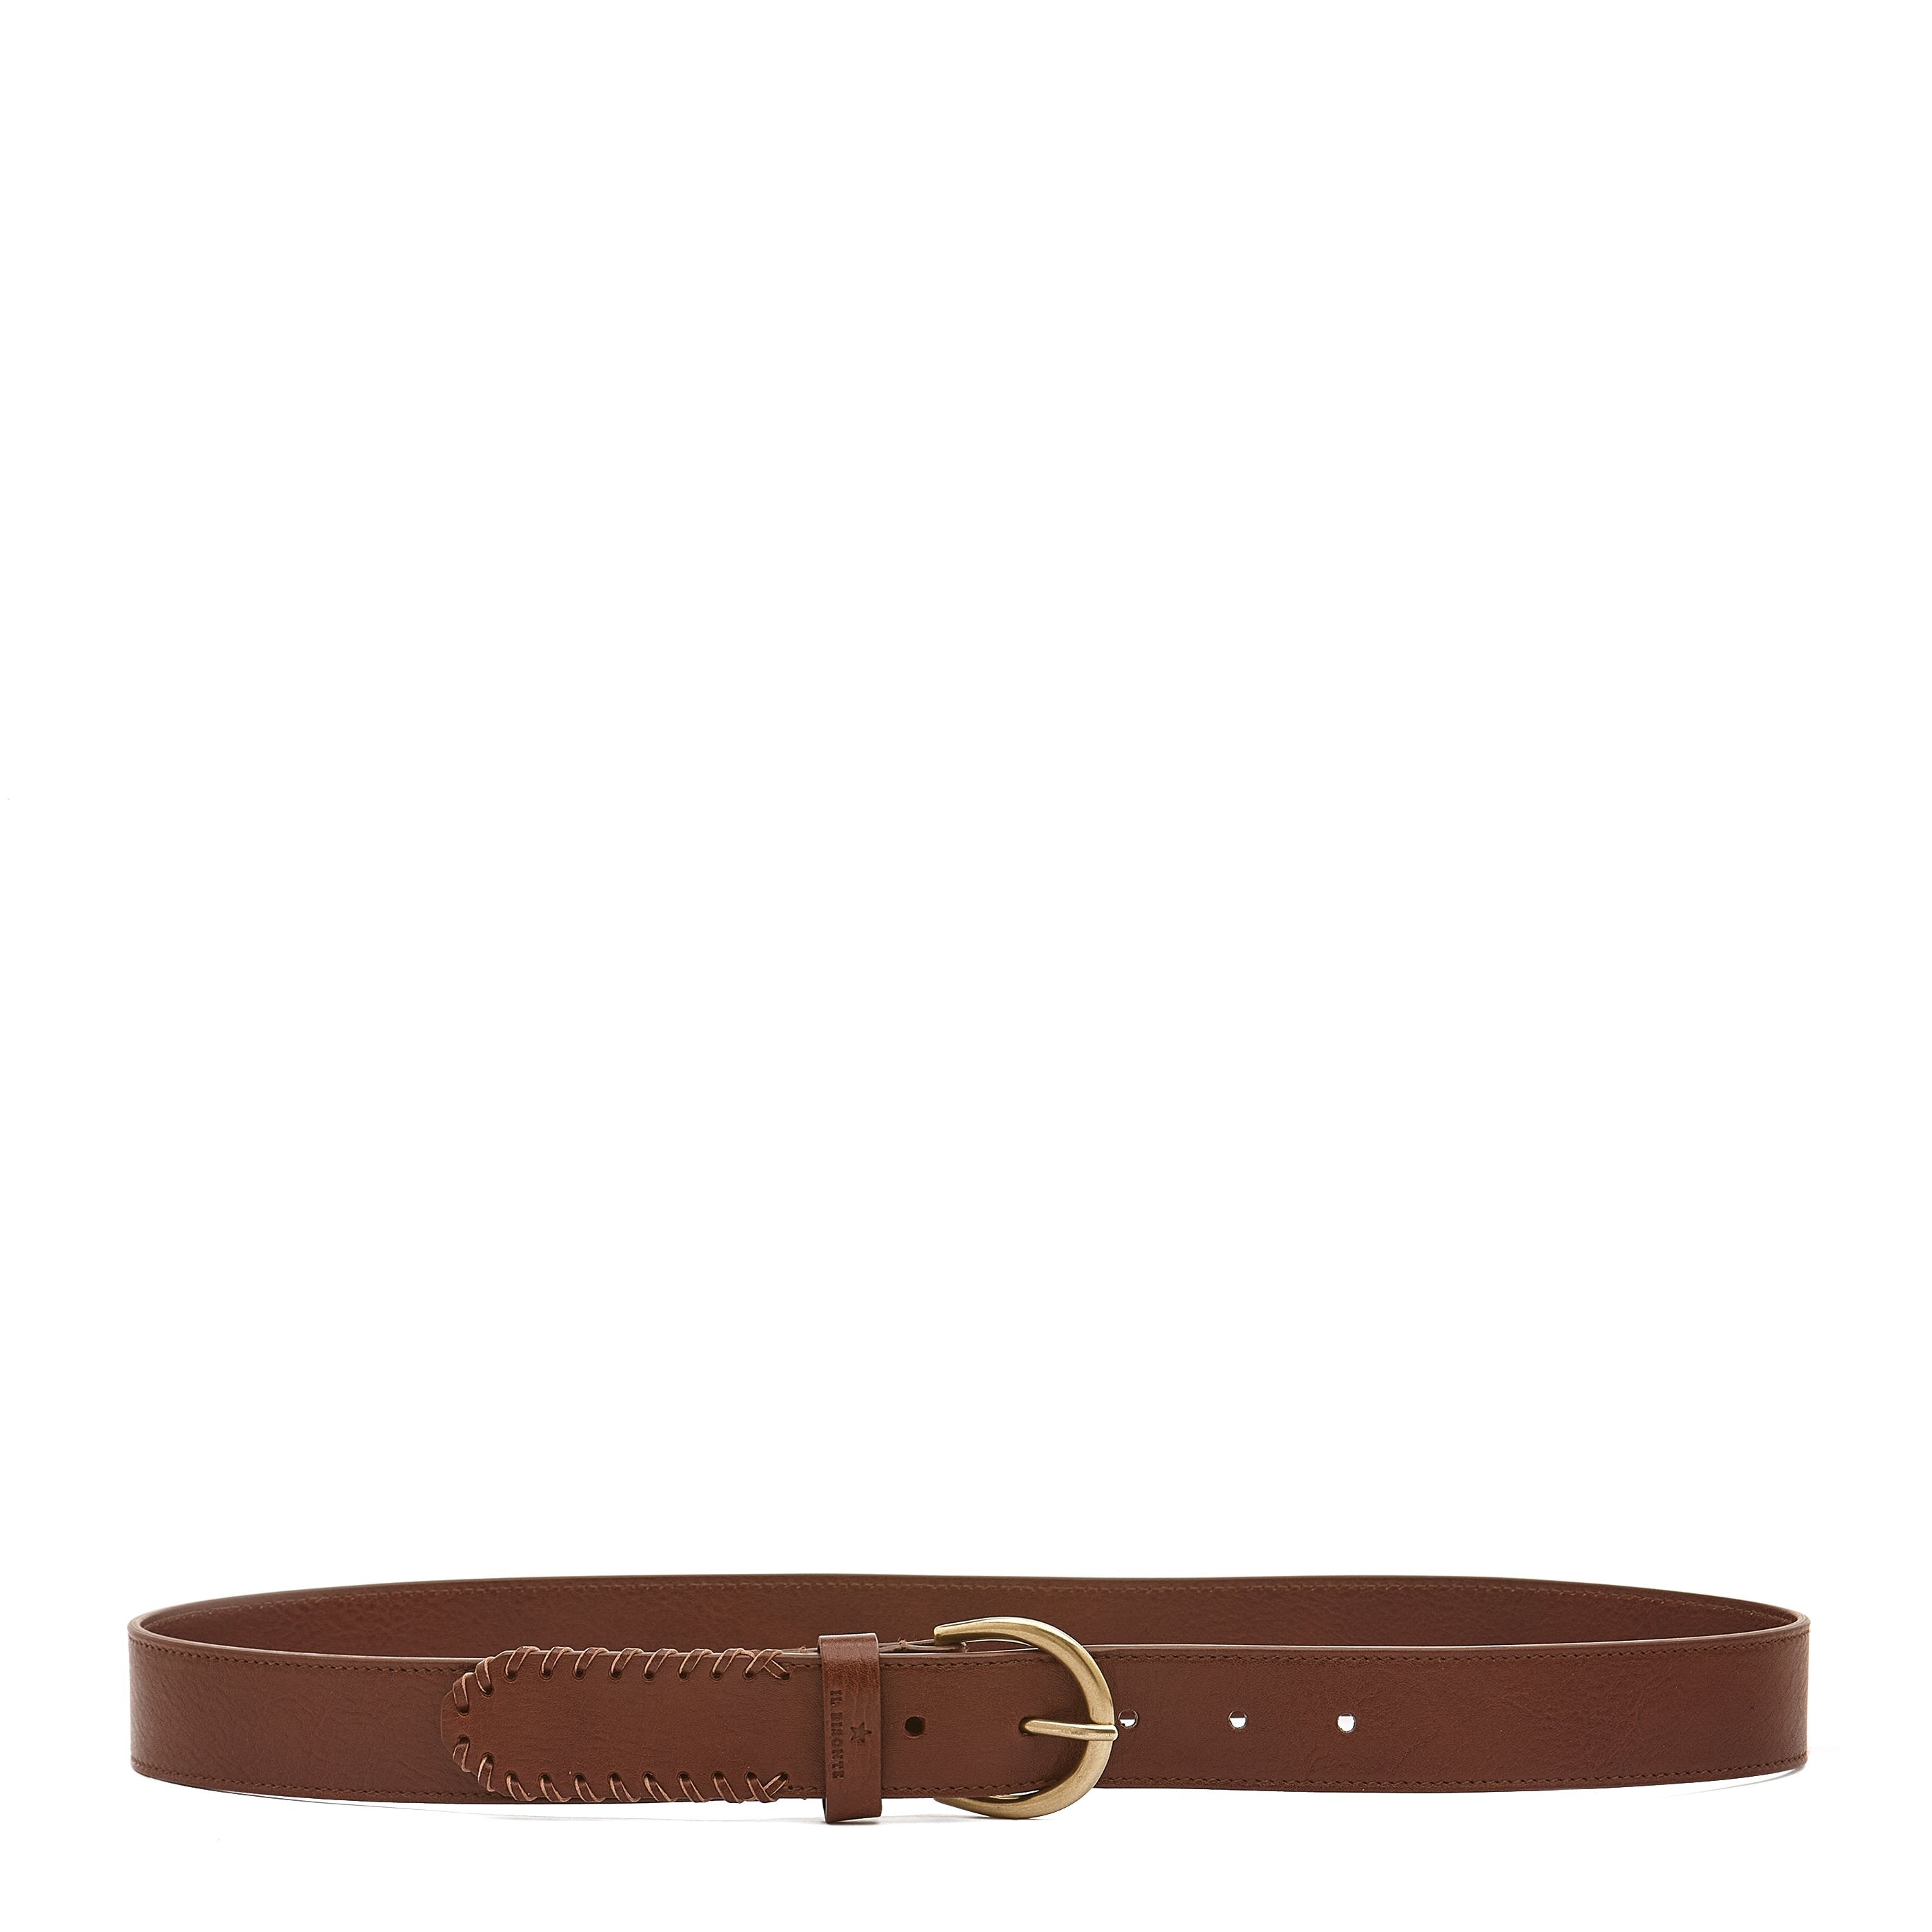 La fiaba | Women's belt in leather color arabica